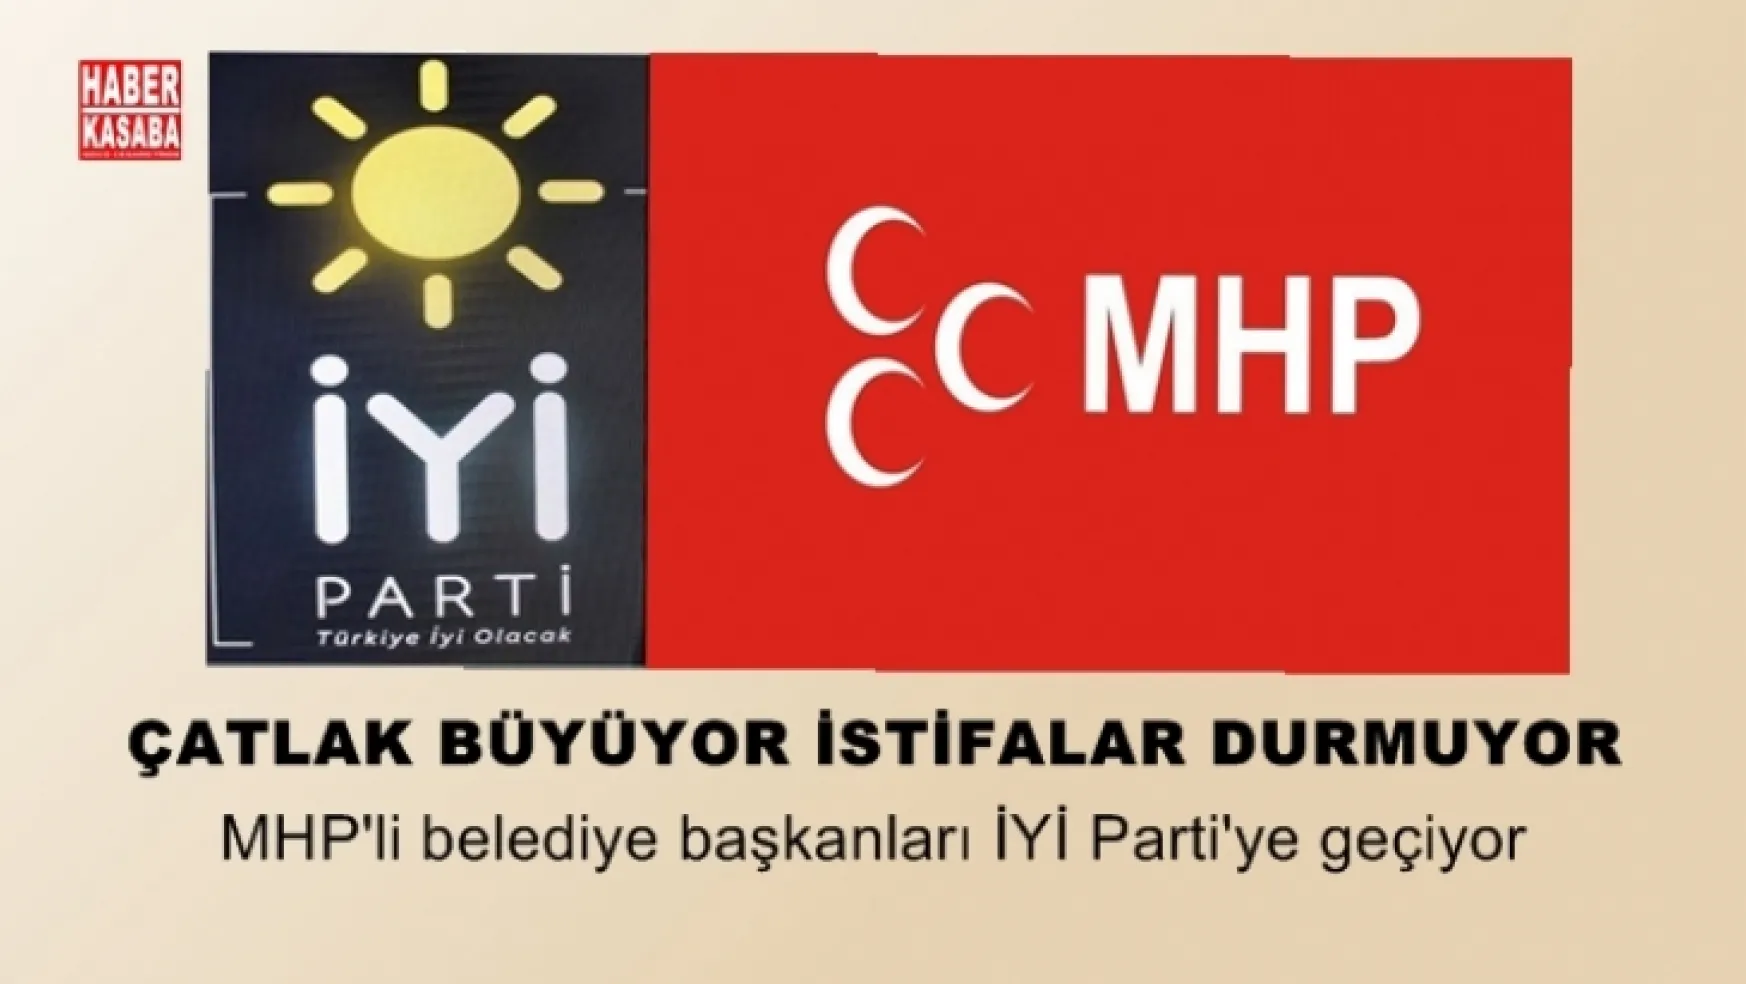 MHP'li belediye başkanları İYİ Parti'ye geçiyorlar